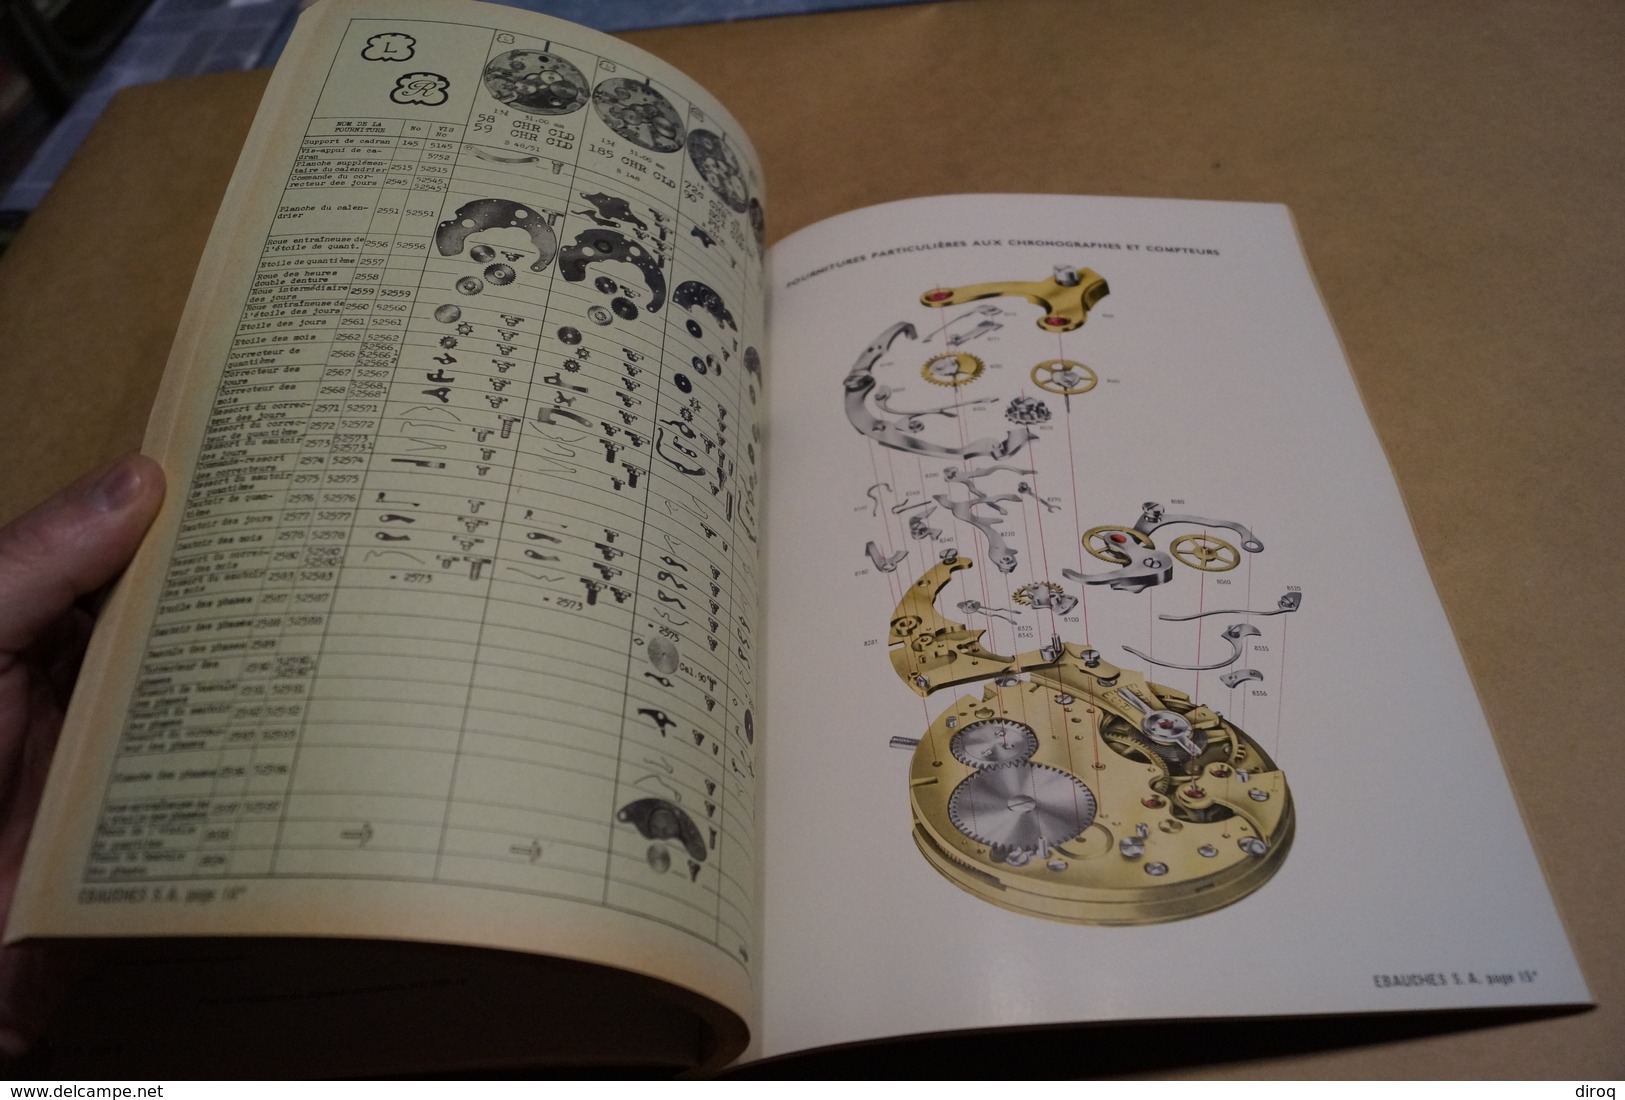 ancien catalogue d'Horlogerie Suisse,Ebauche S.A.Neuchatel,complet,28 Cm. sur 21,5 Cm.